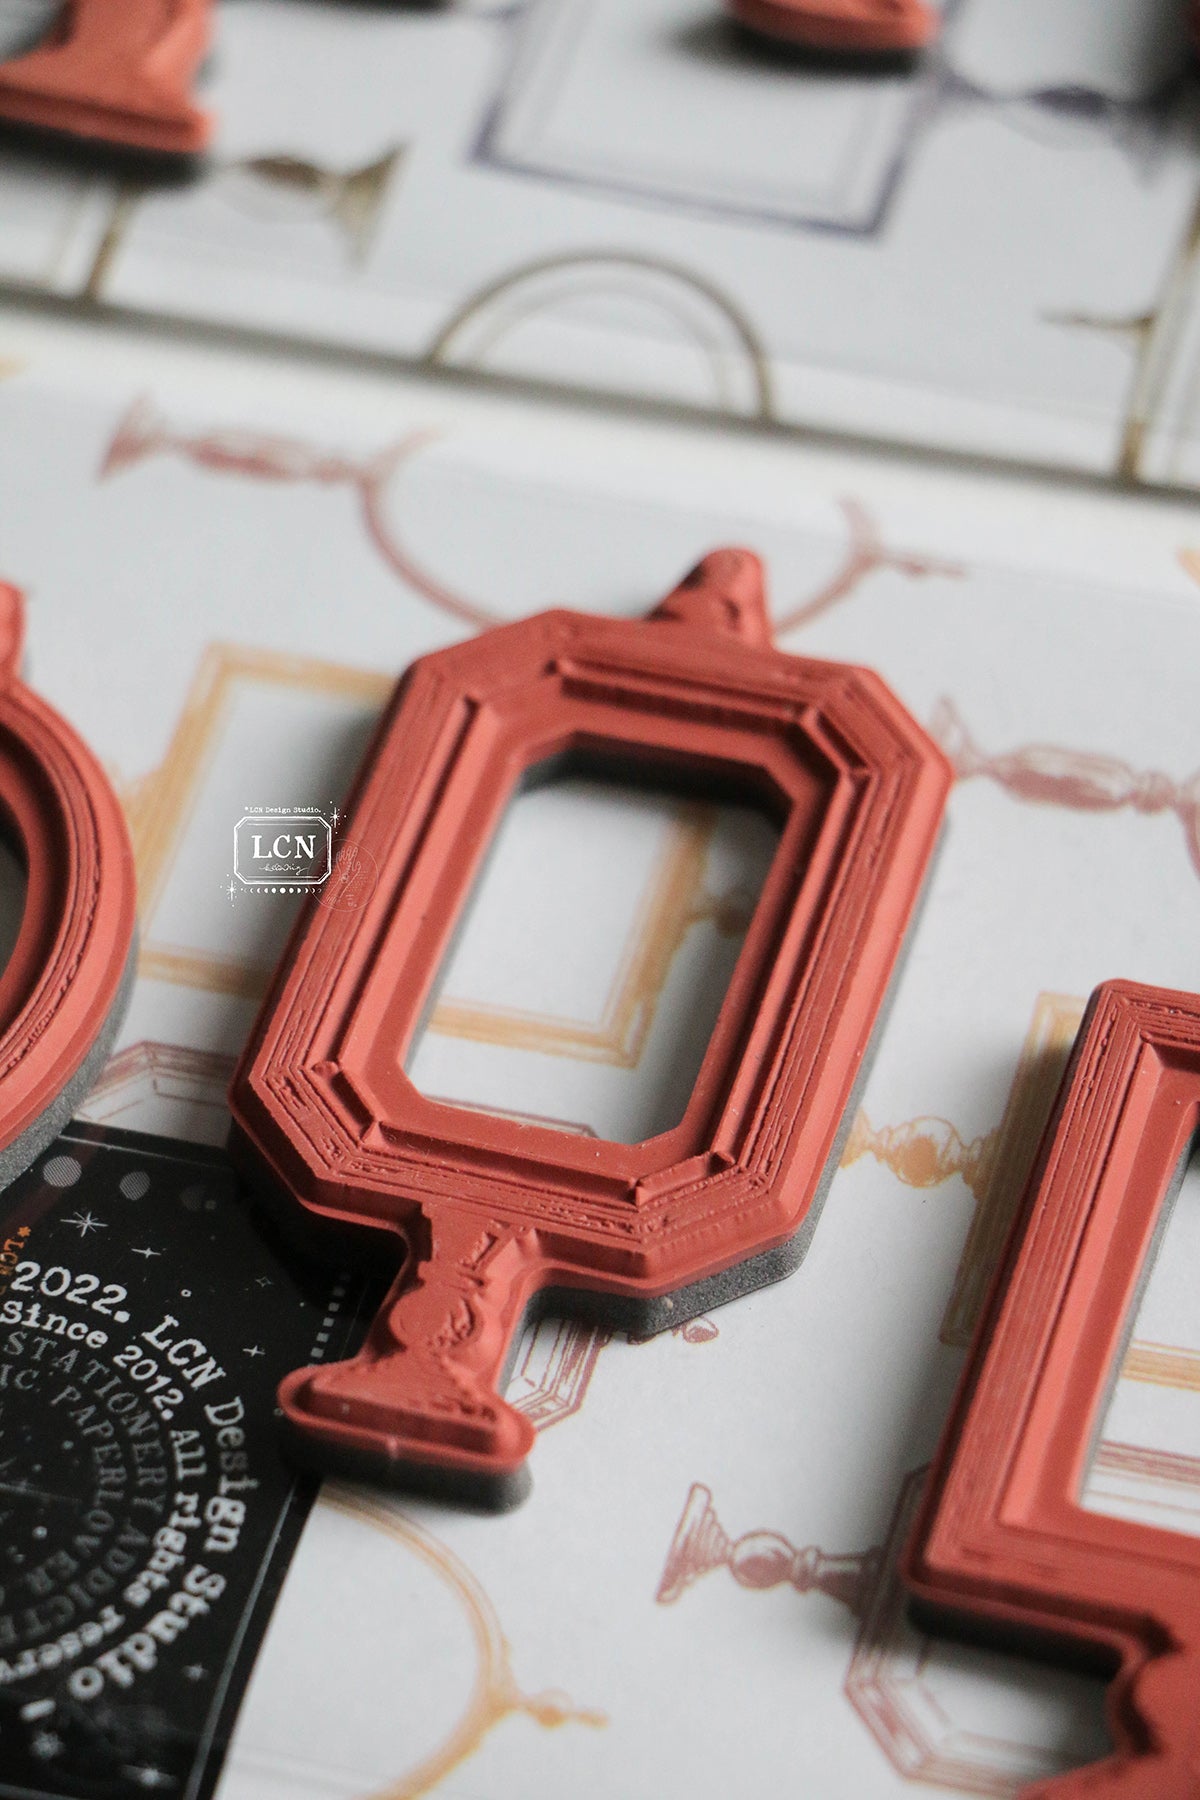 LCN Design Studio: Specimen Display Rubber Stamps Set